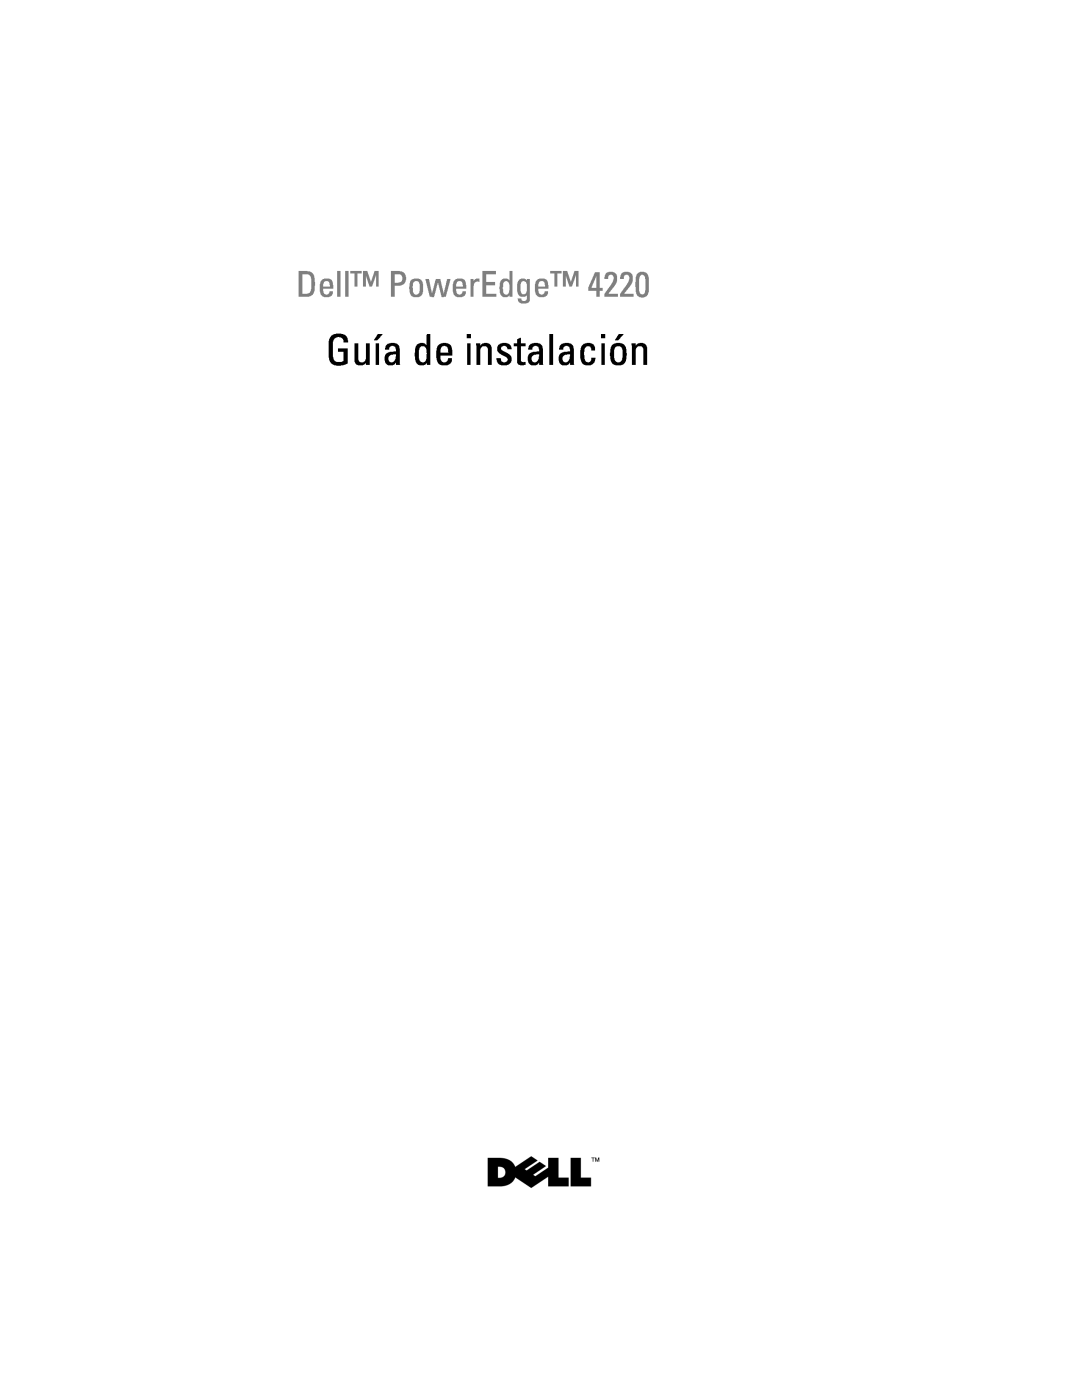 Dell 4220 manual Guía de instalación, Dell PowerEdge 